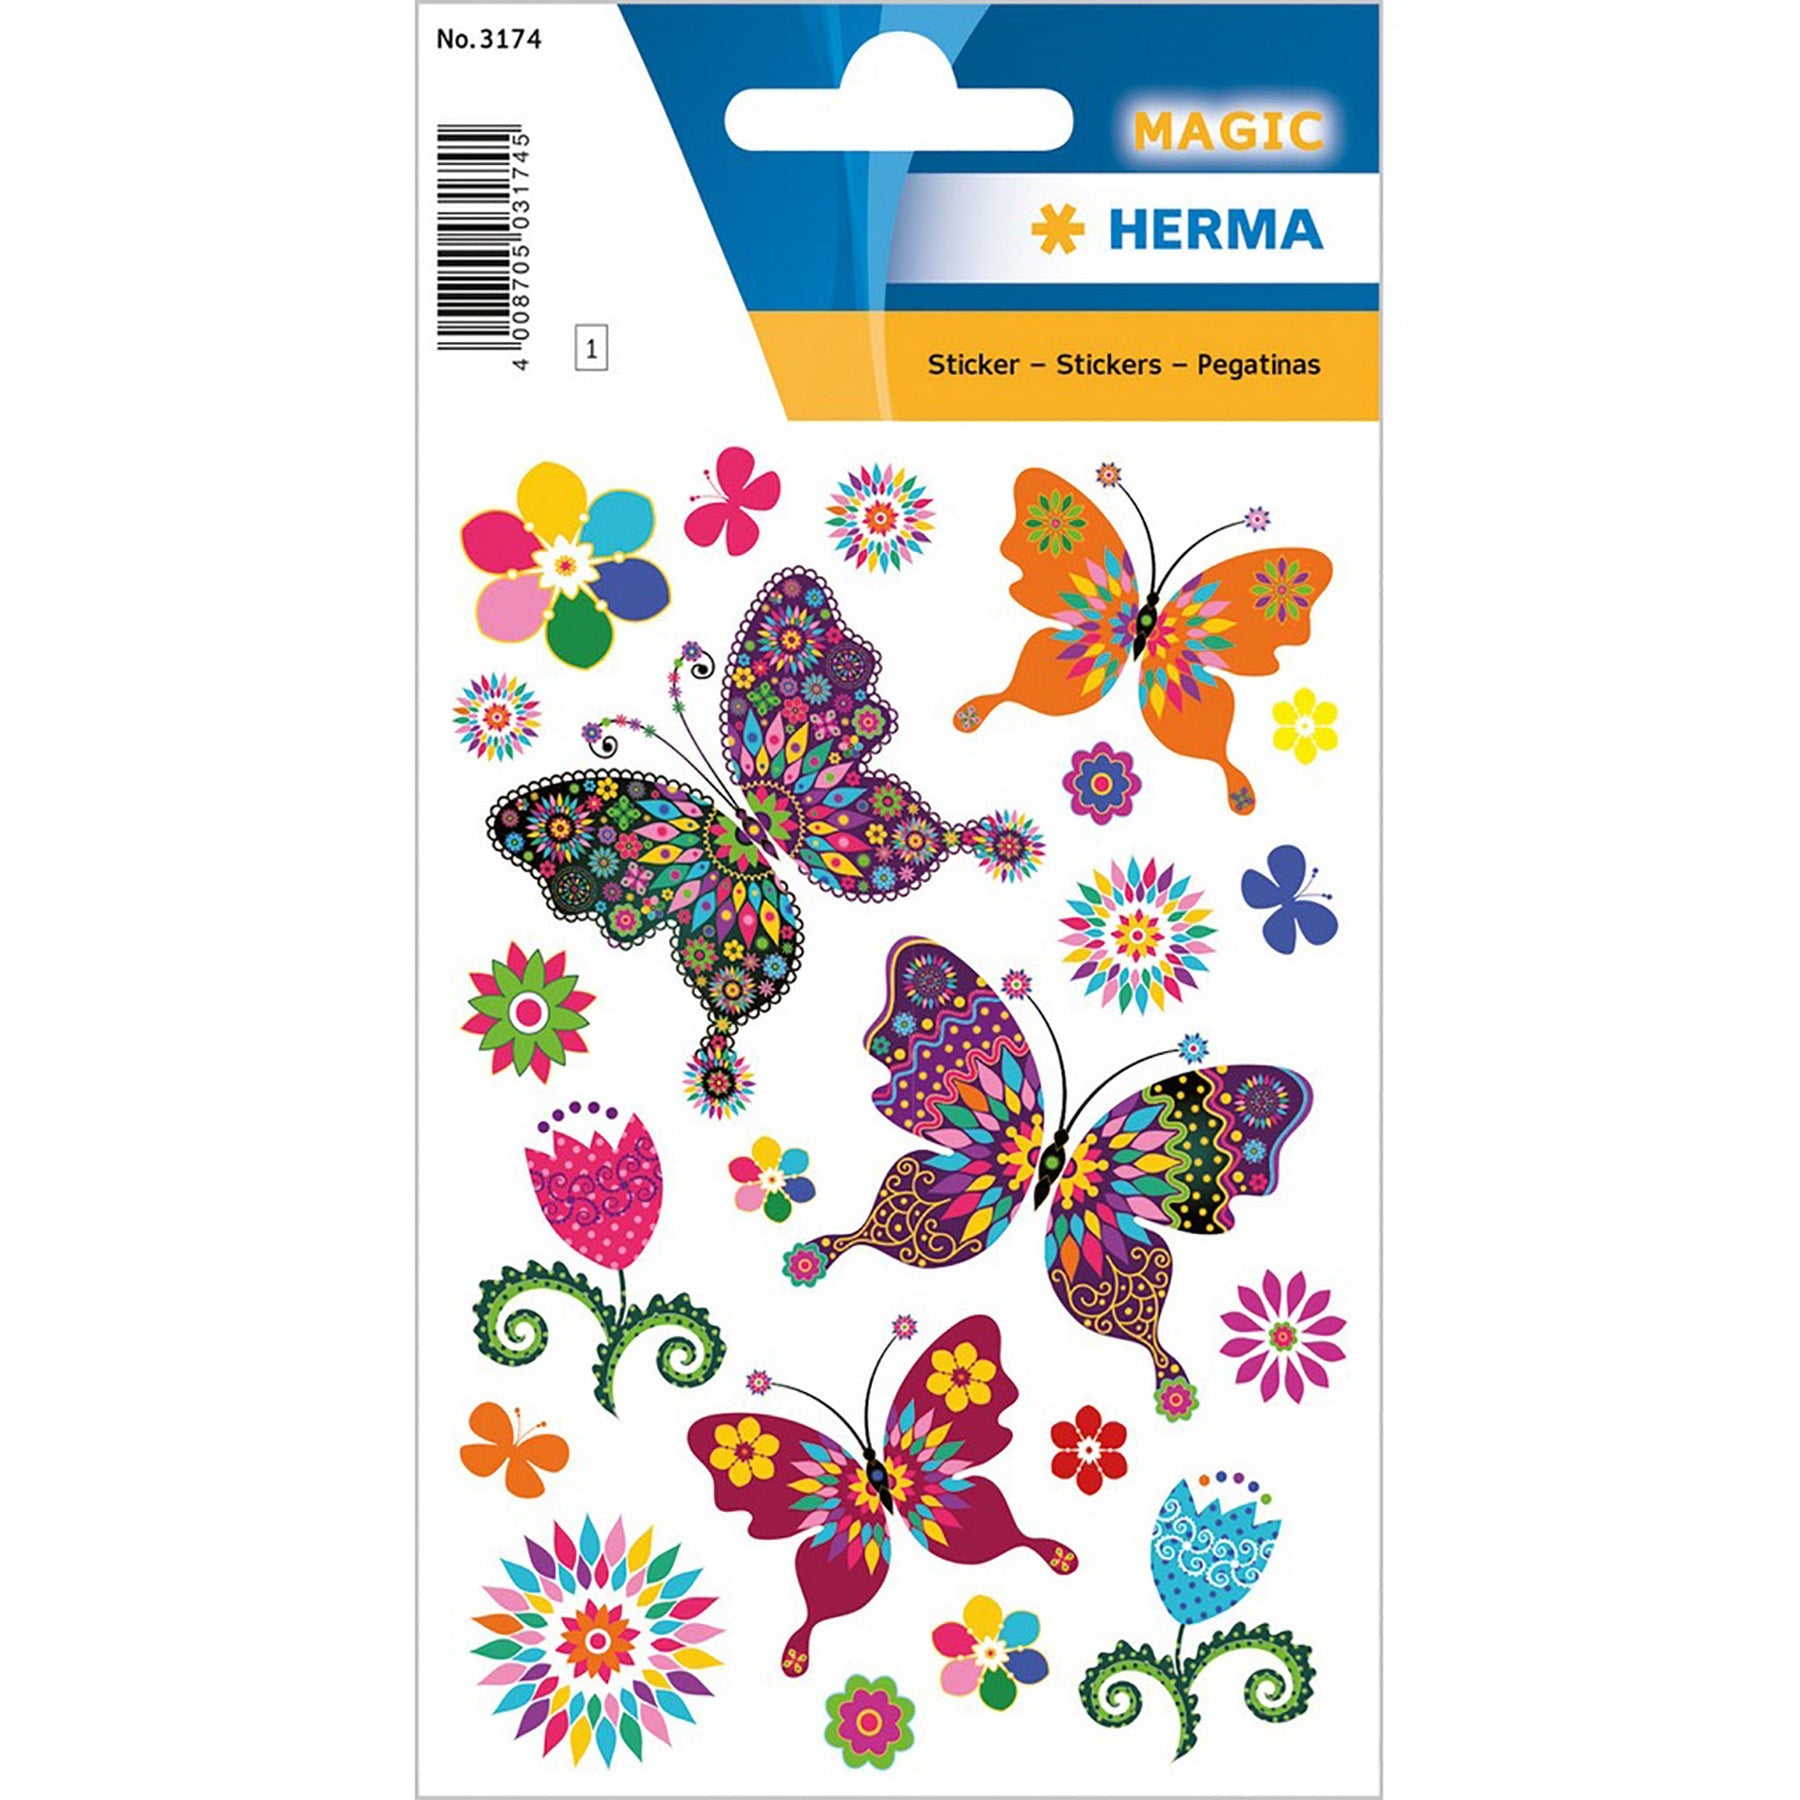 Herma Magic Stickers Butterflies Diversity Glittery Foil 4.75x3.1in Sheet